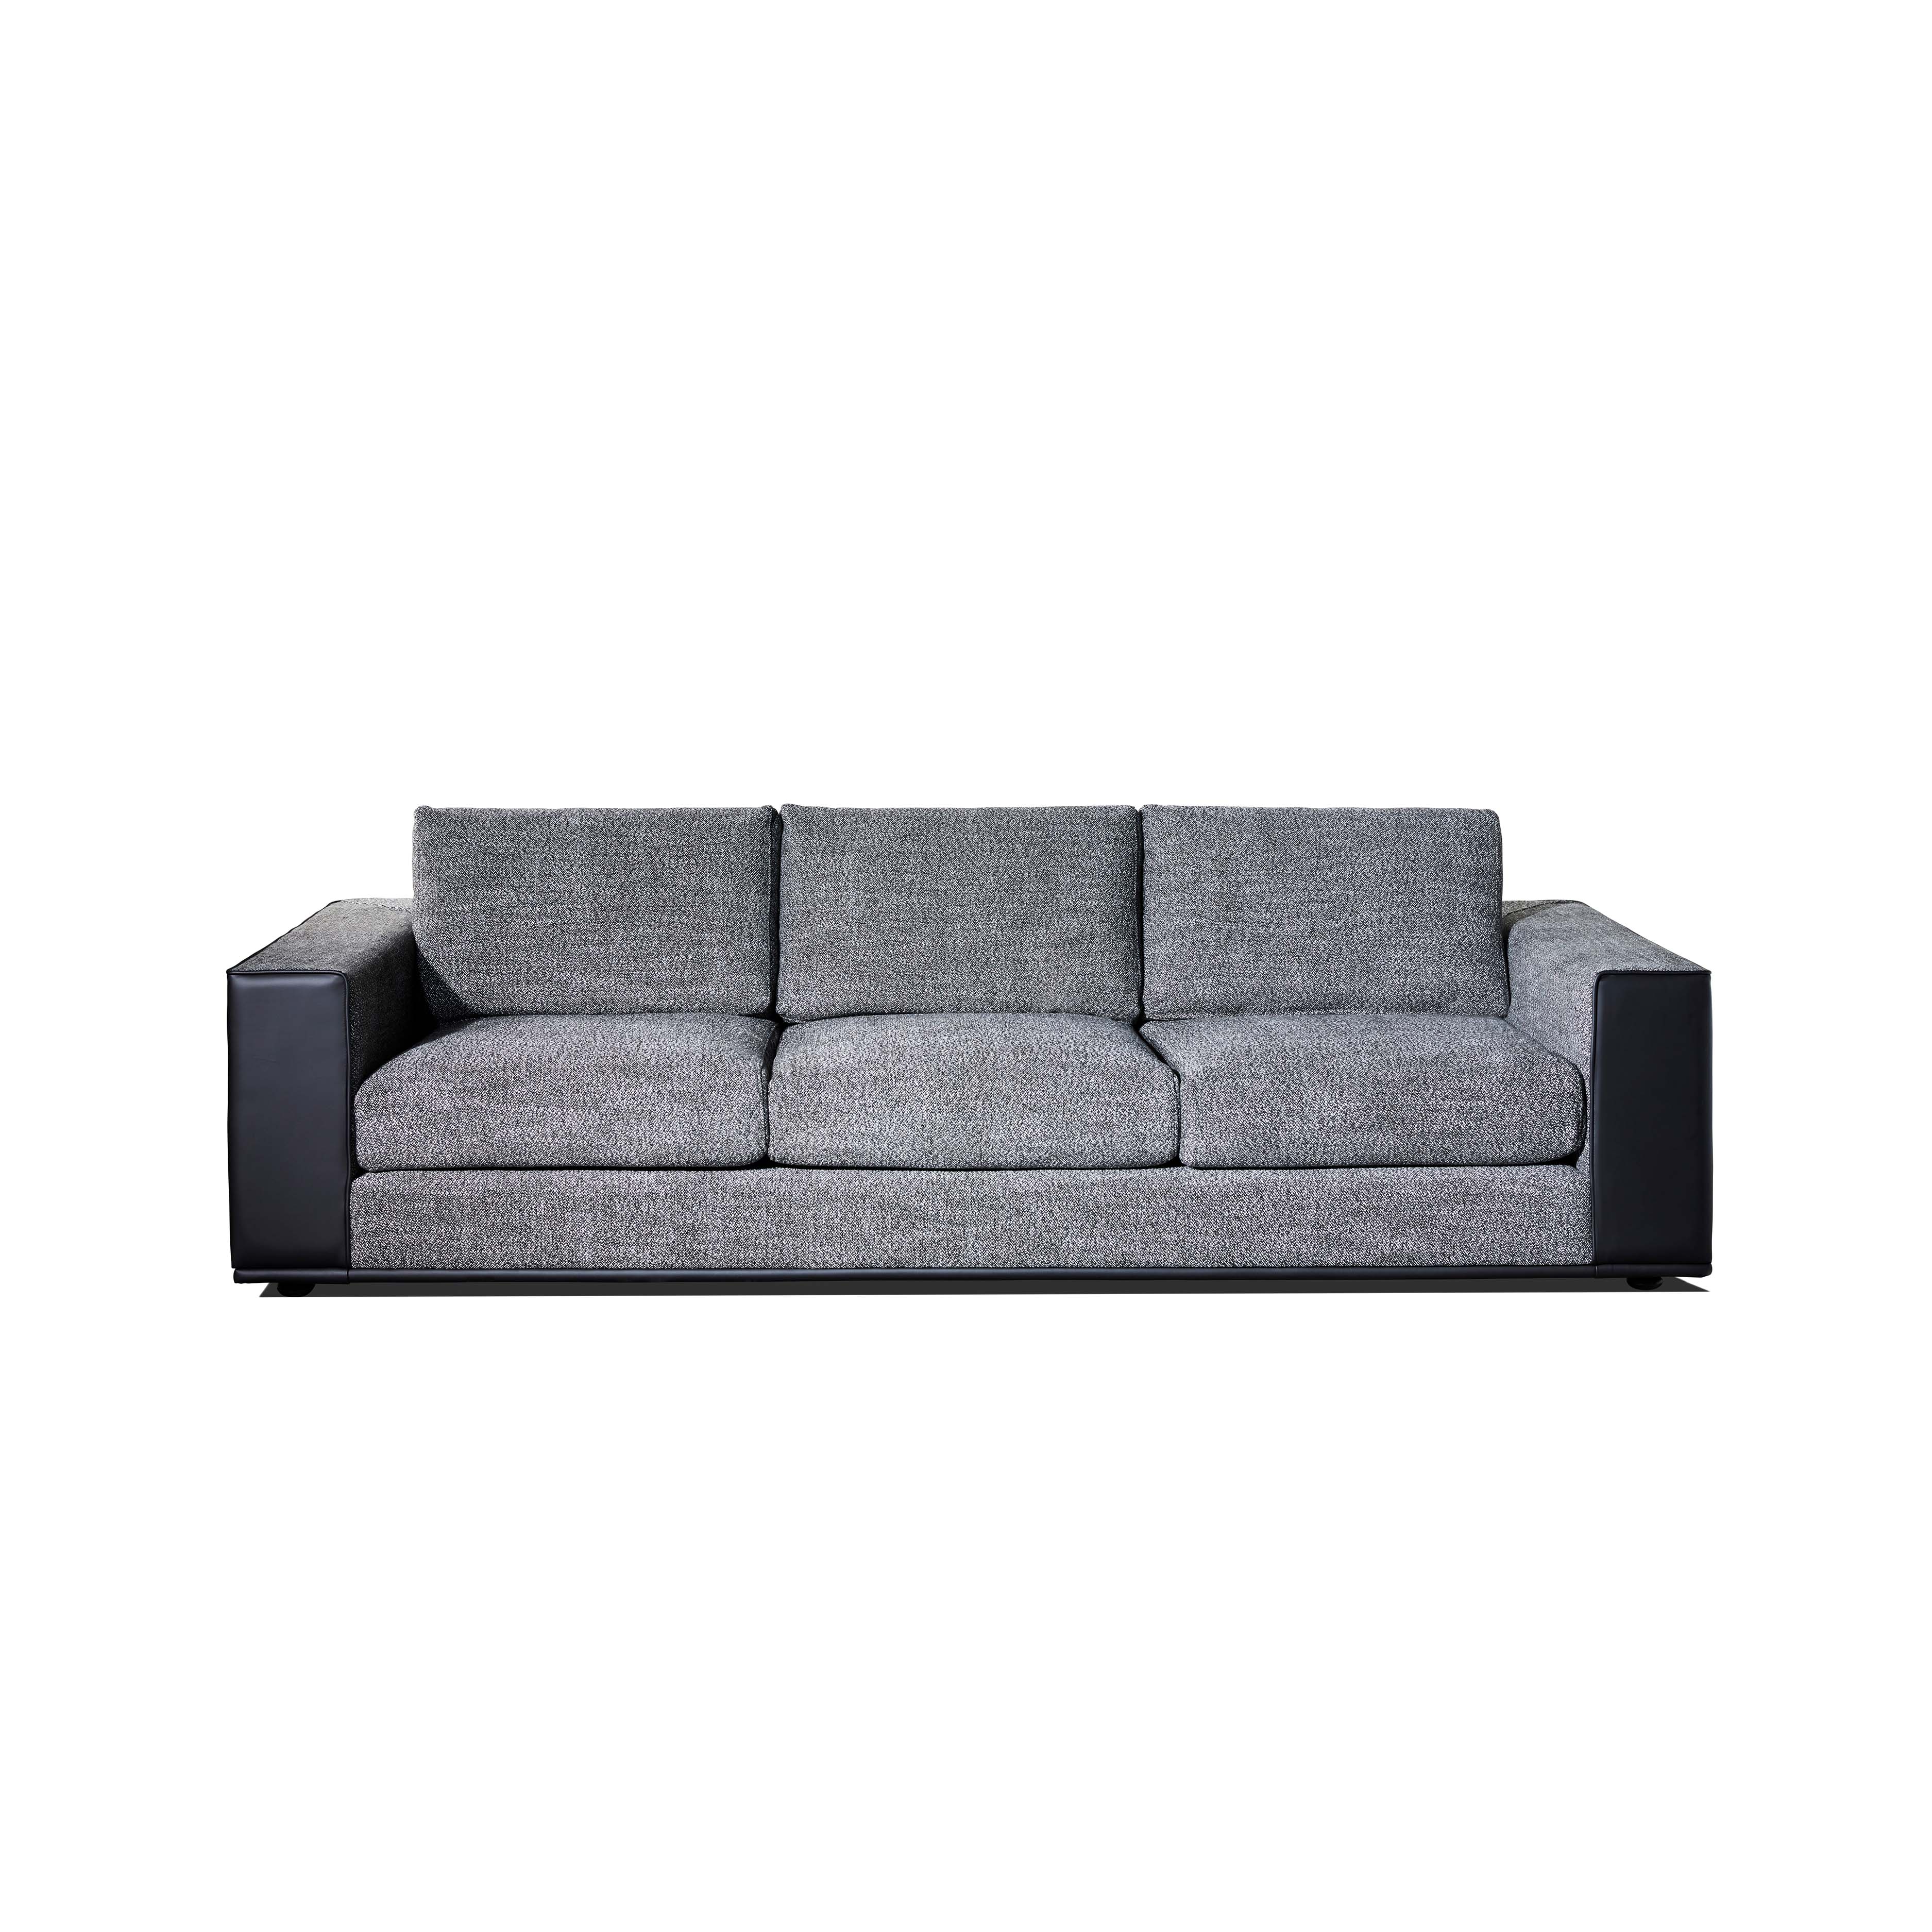 April Sofa - Zuster Furniture